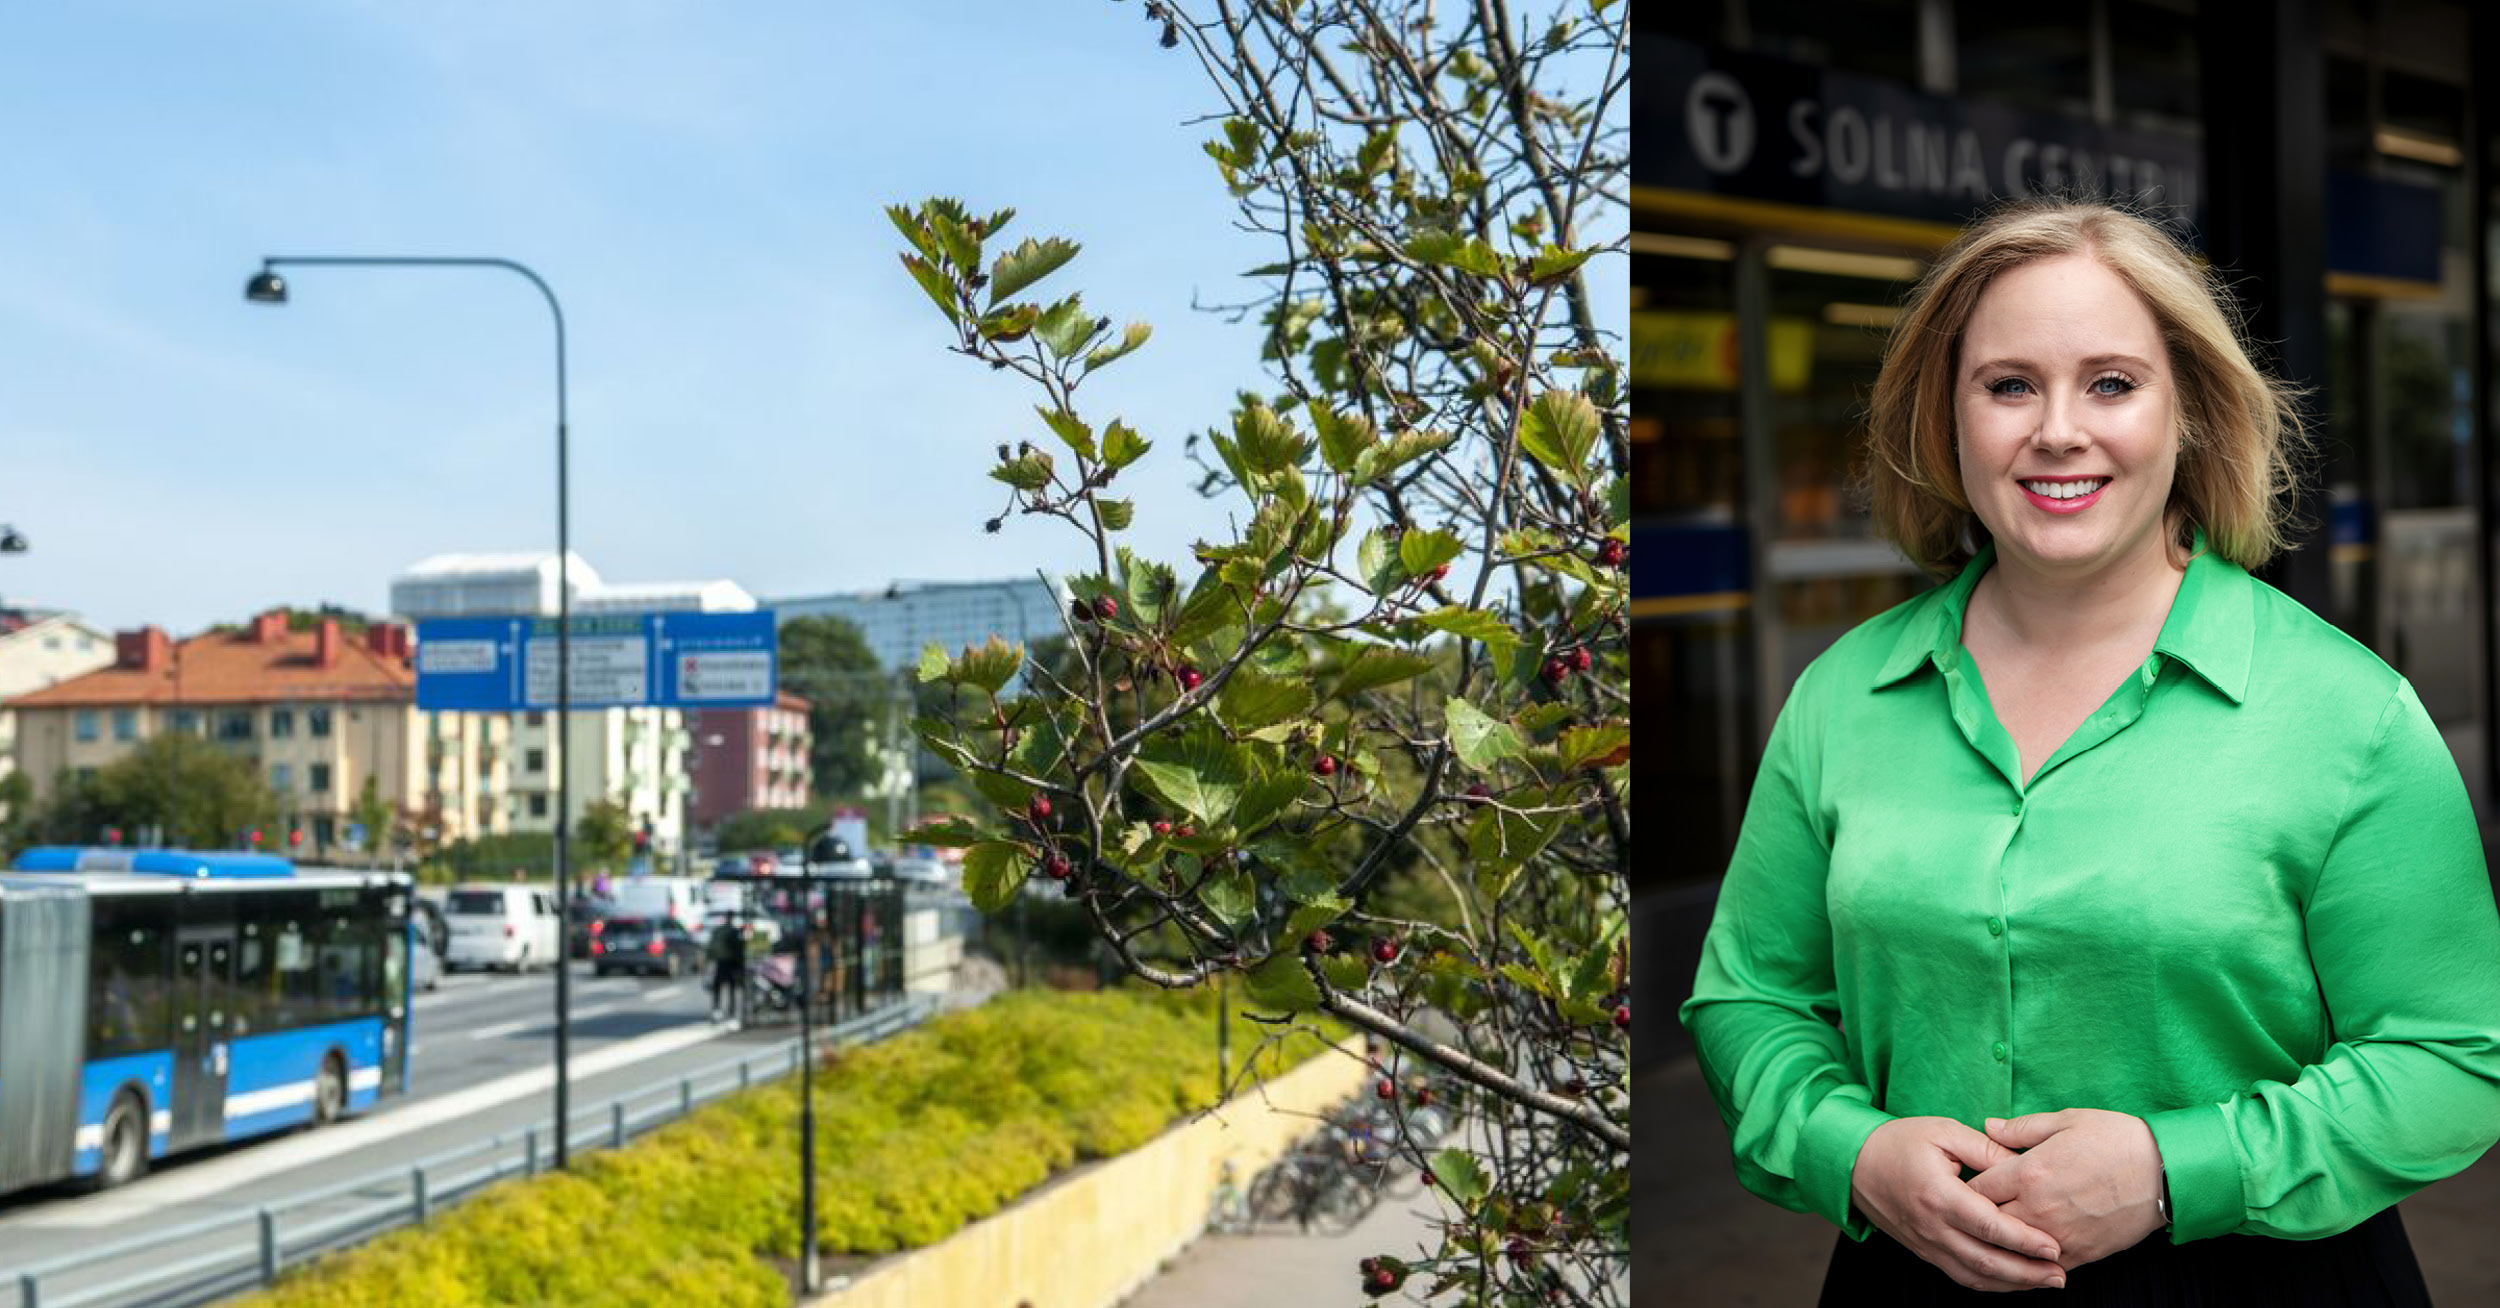 Delad bild av väg i en stad och kvinna som ler i grön skjorta.